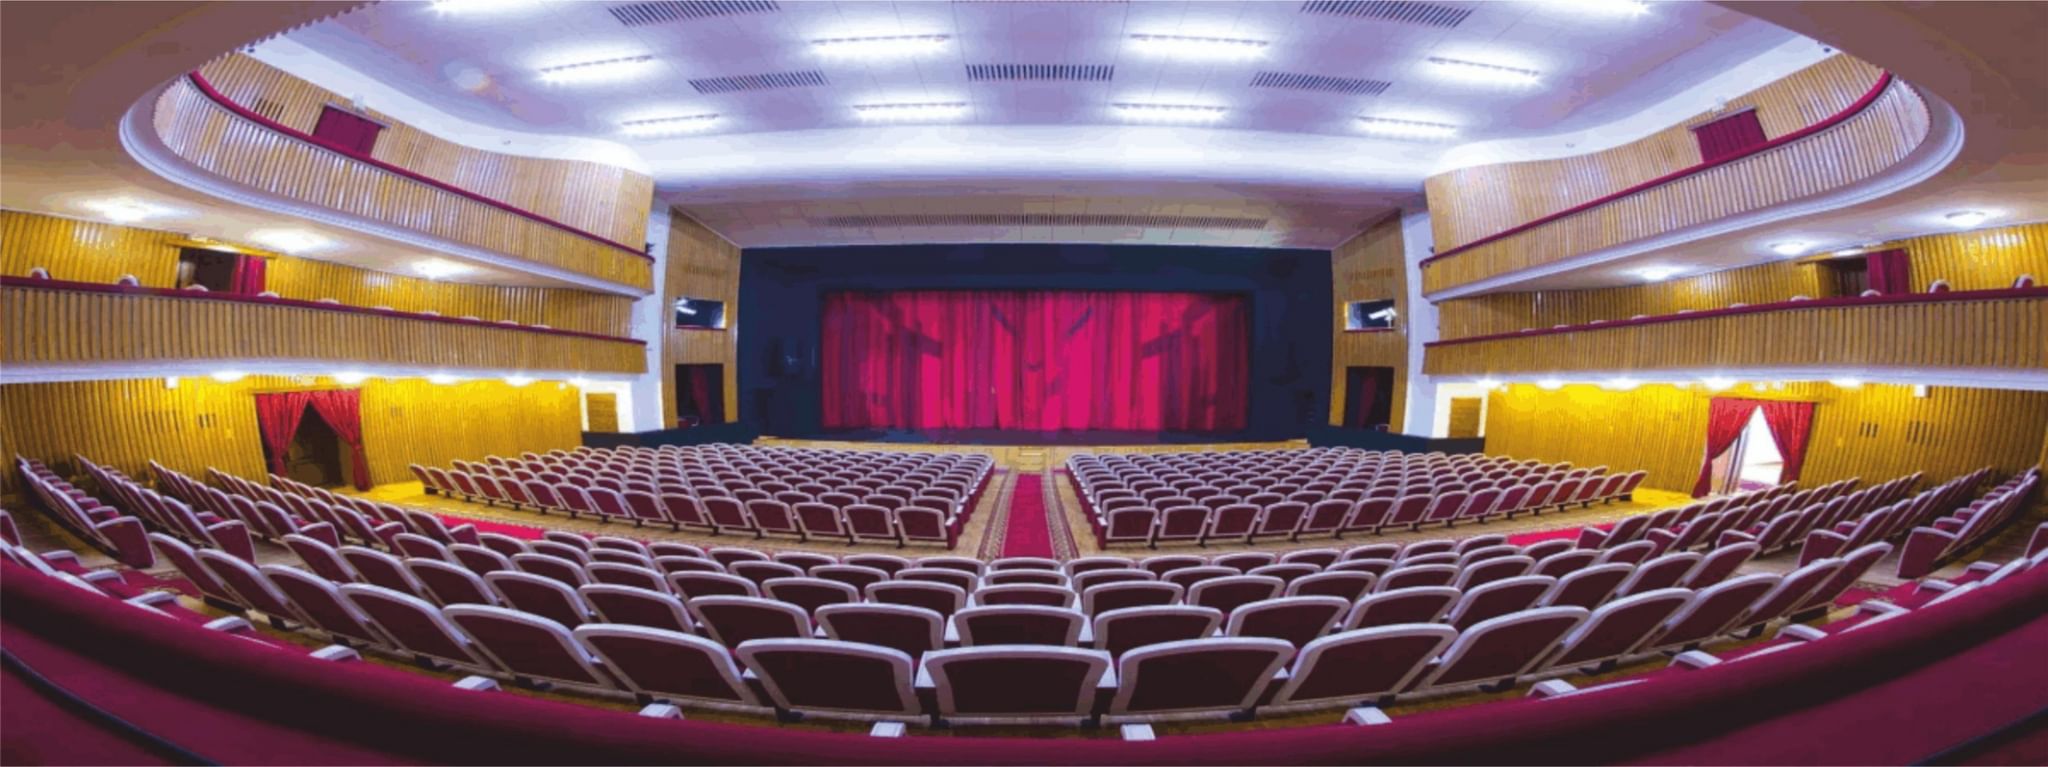 ставропольский драматический театр